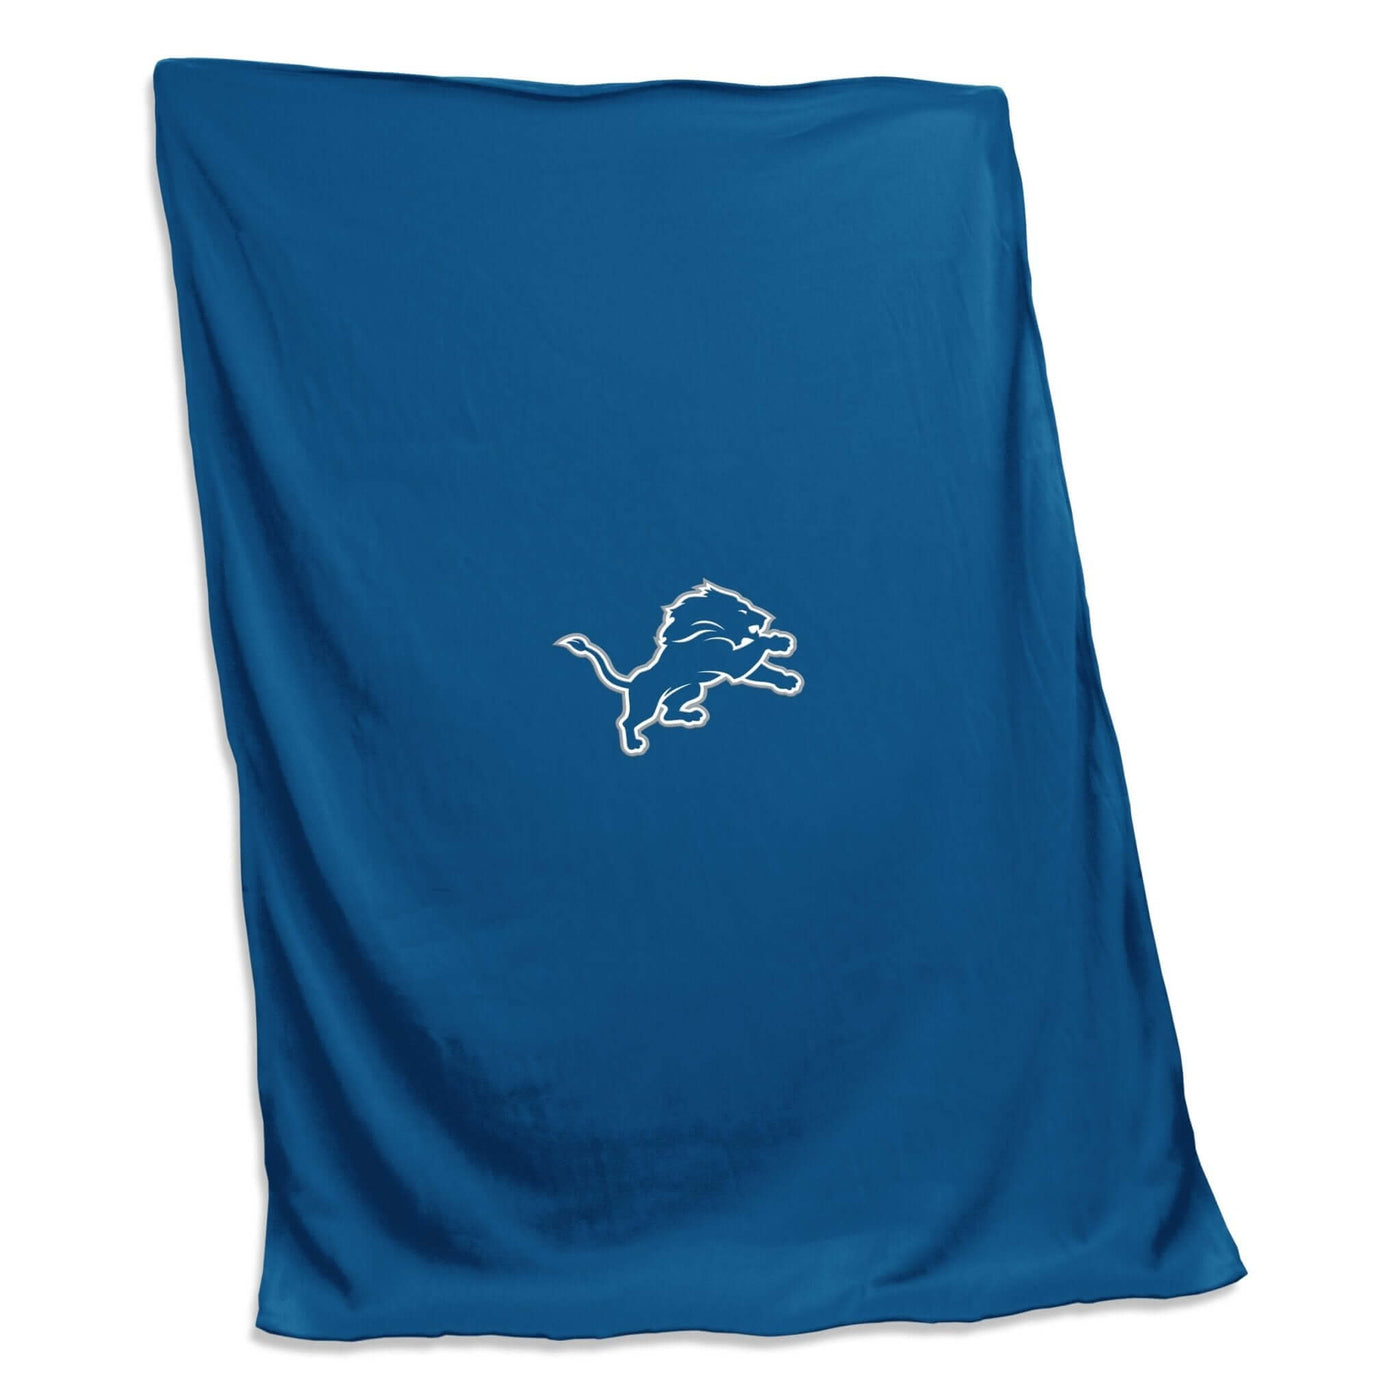 Detriot Lions Sweatshirt Blanket - Logo Brands